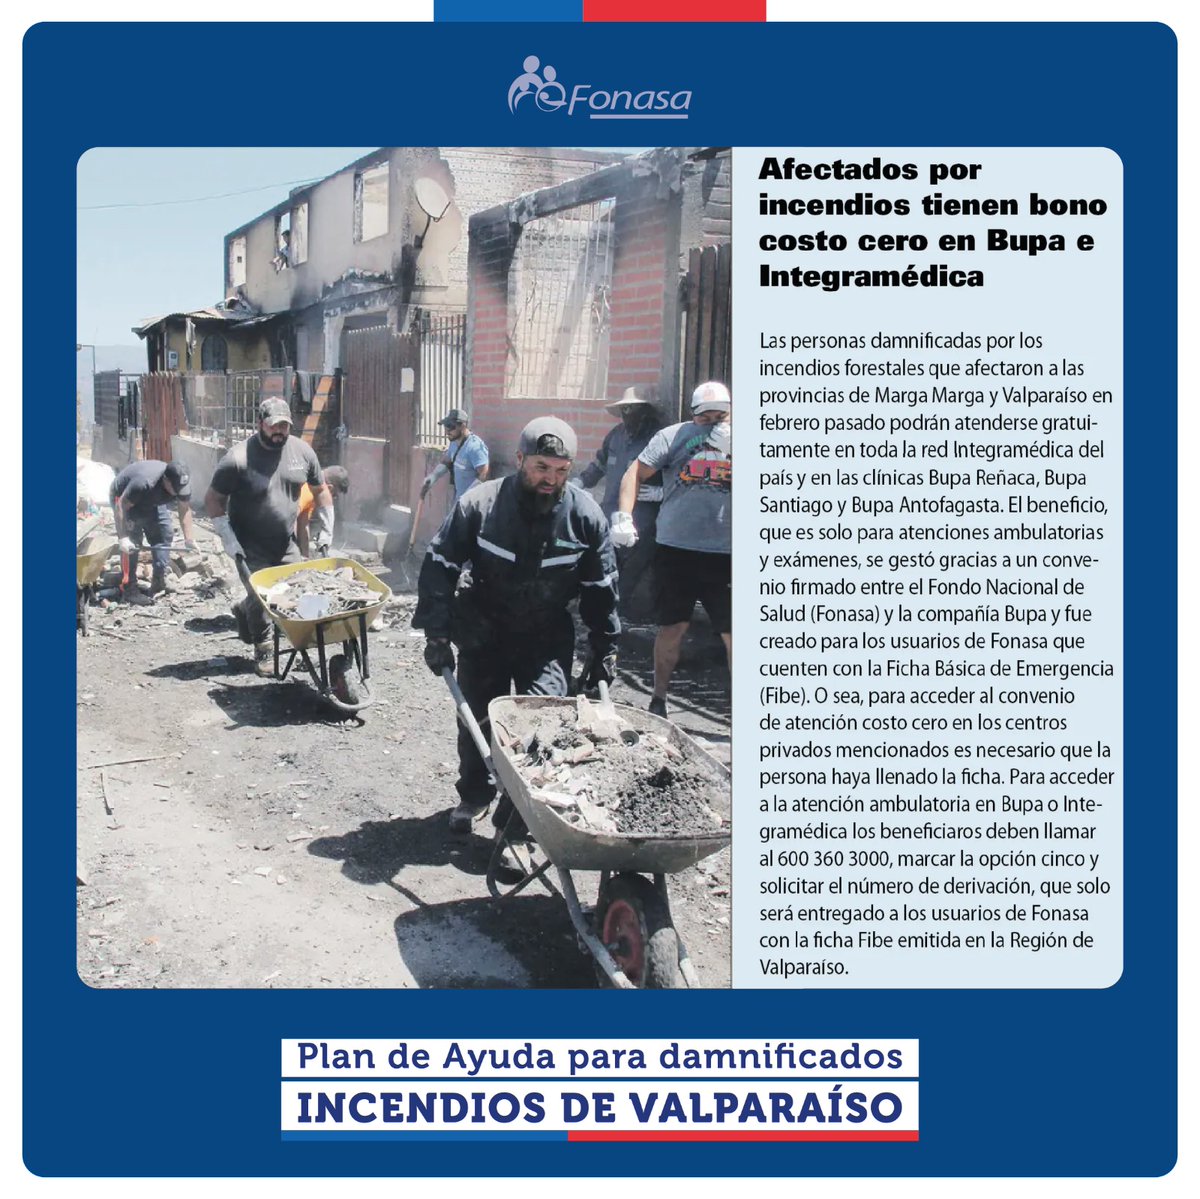 📡#FonasaEnMedios En la edición de este viernes @lun entrega detalles del Plan de Apoyo para los damnificados por los incendios de #Valparaíso. Alianza de @Fonasa y @BupaChile que otorga atenciones ambulatorias de salud sin costo. 📲Más información en la nota de @lun: